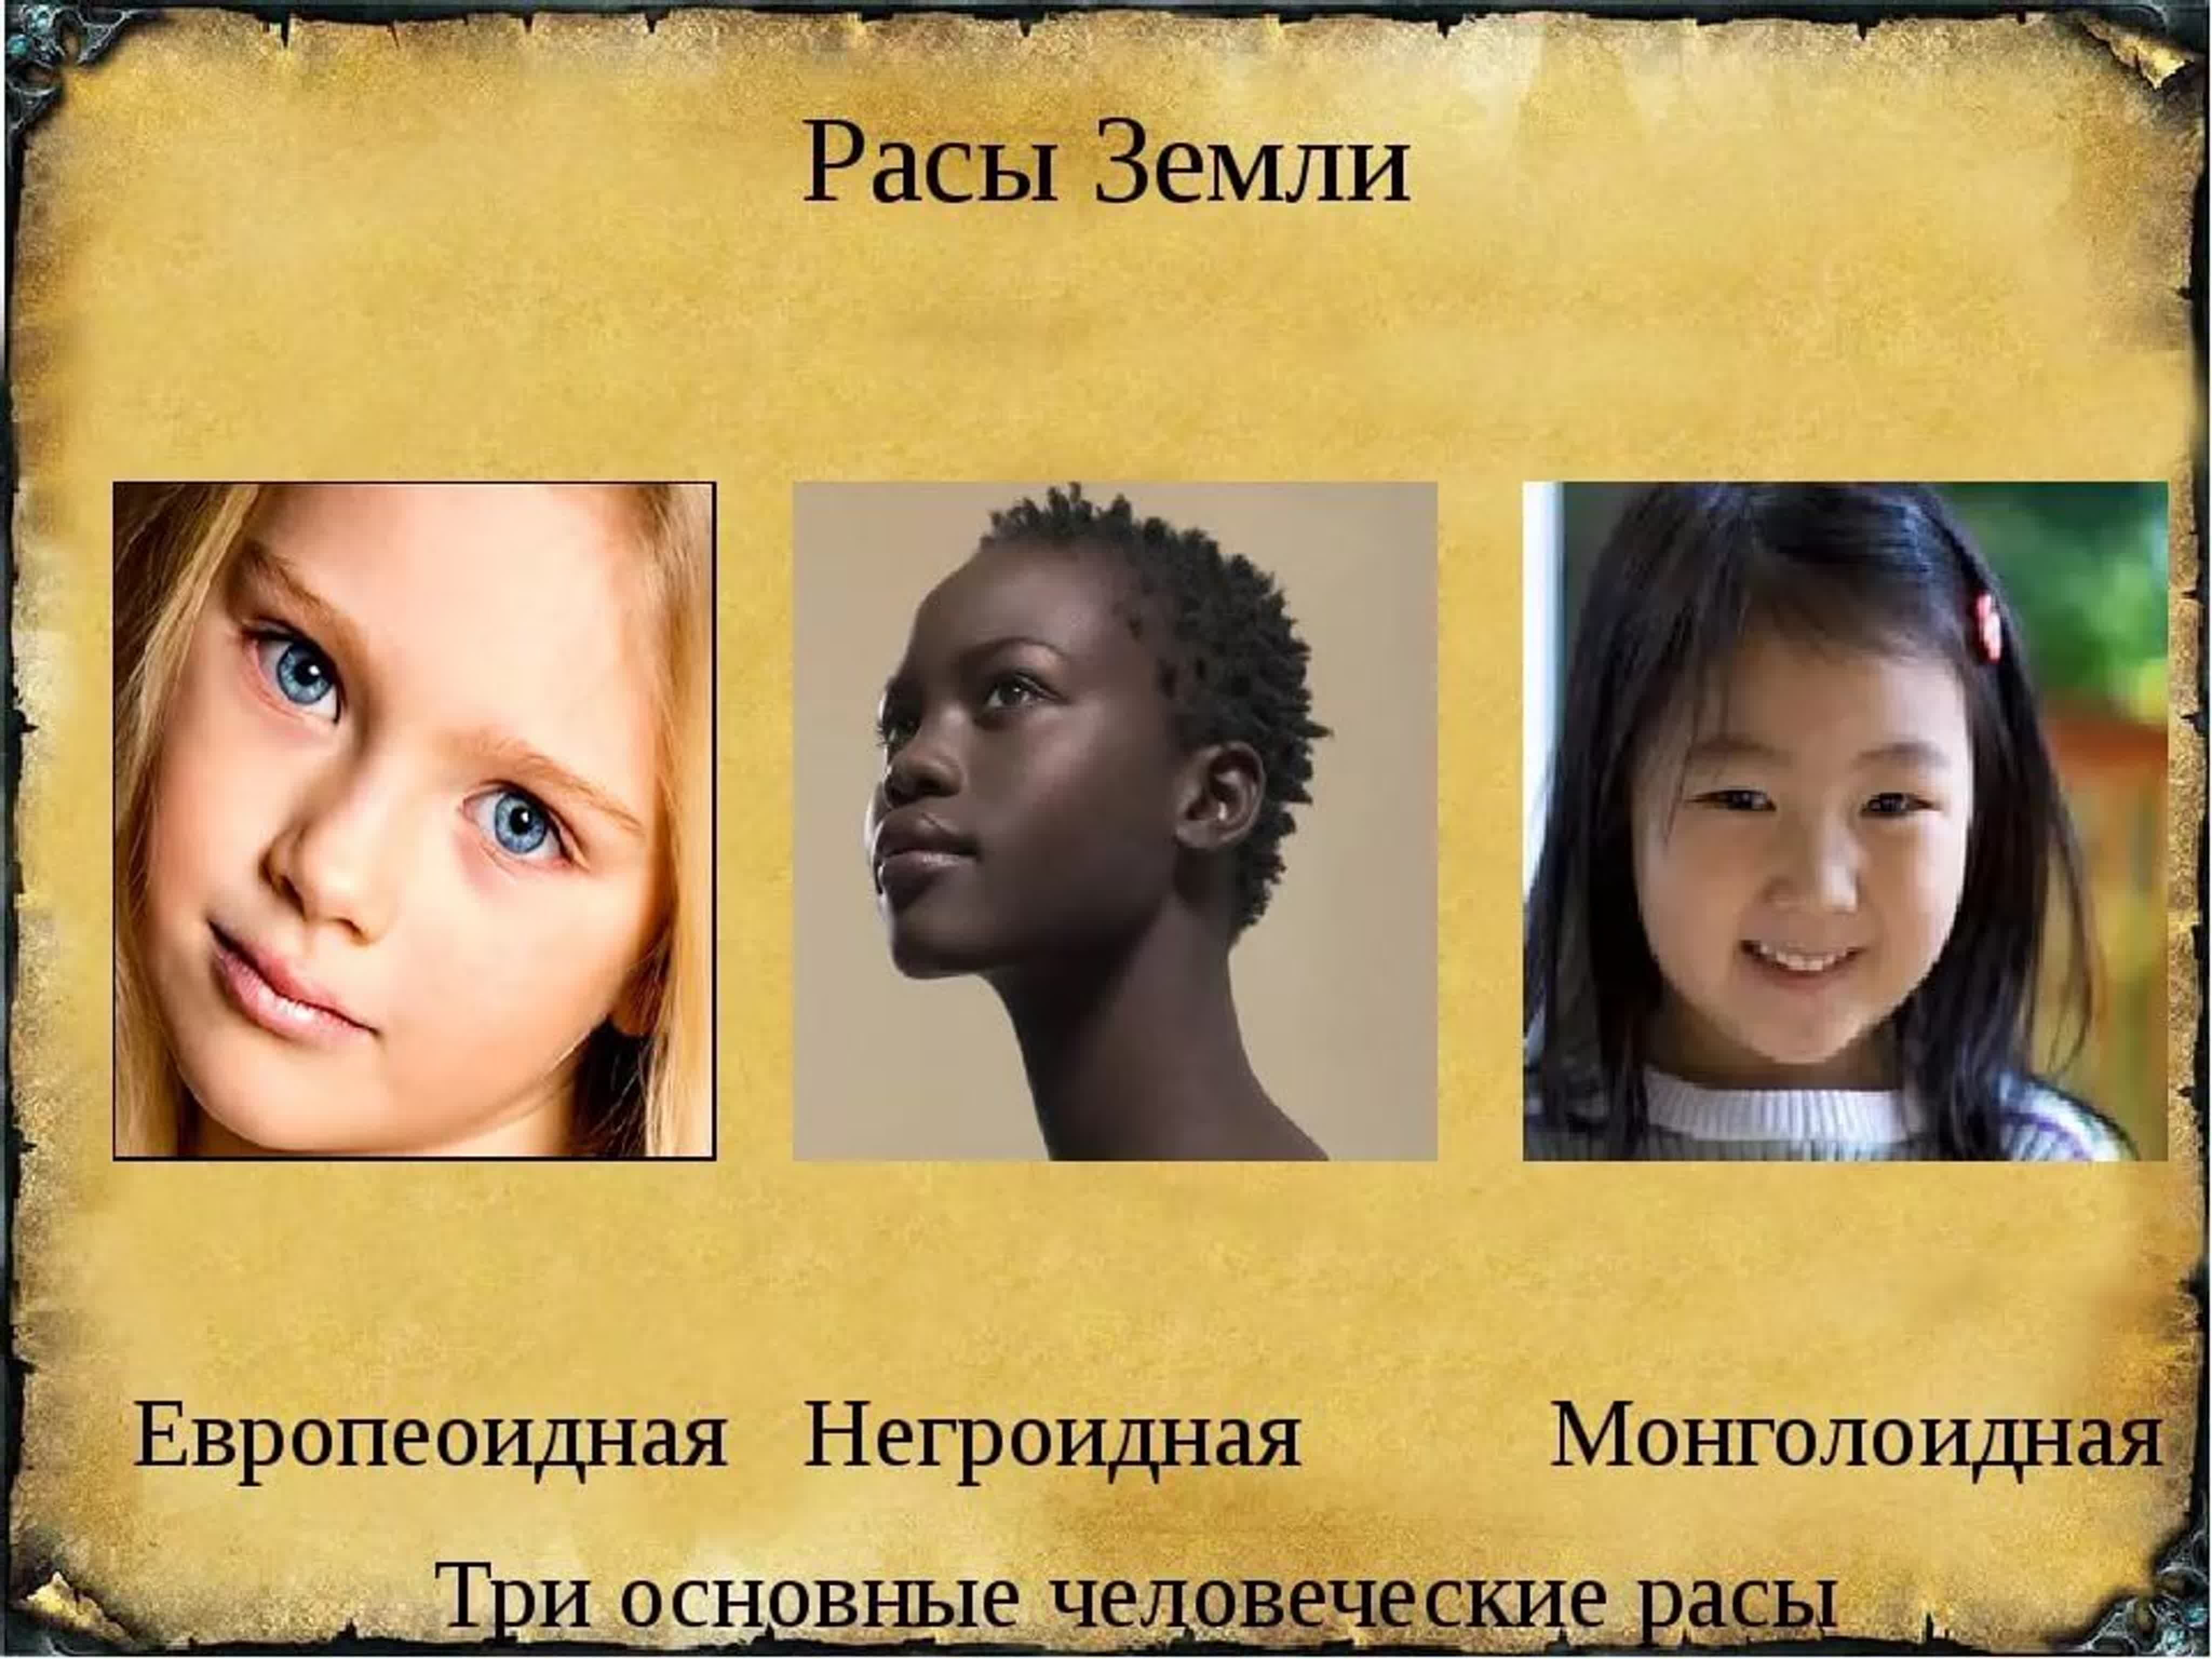 Определение расы человека по фото